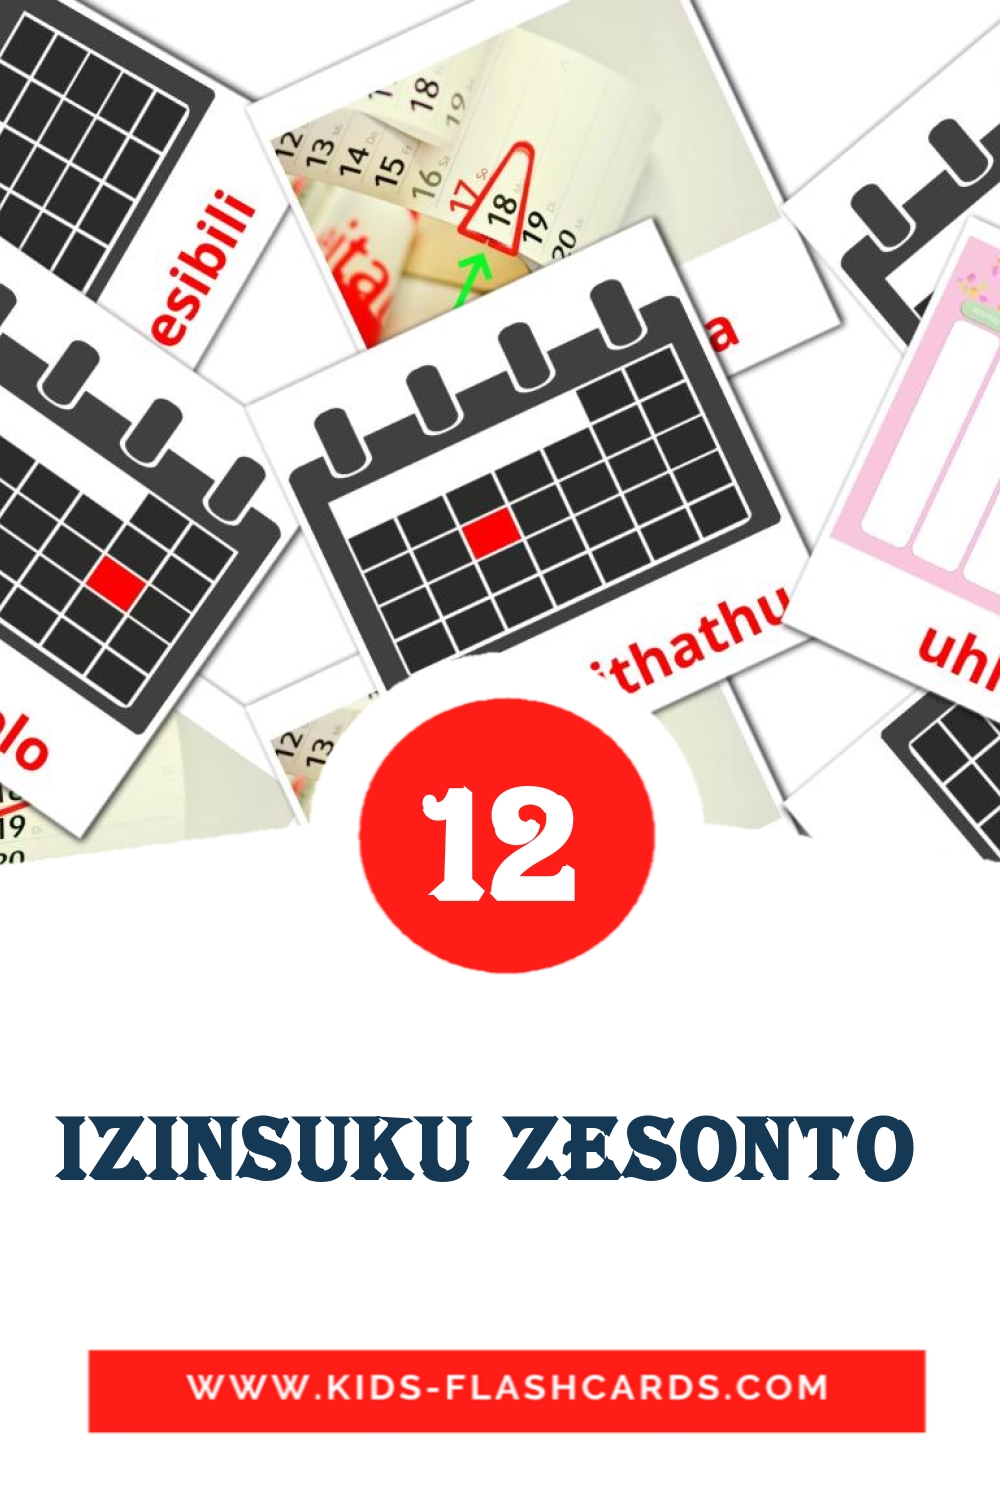 12 Izinsuku zesonto  fotokaarten voor kleuters in het zulu